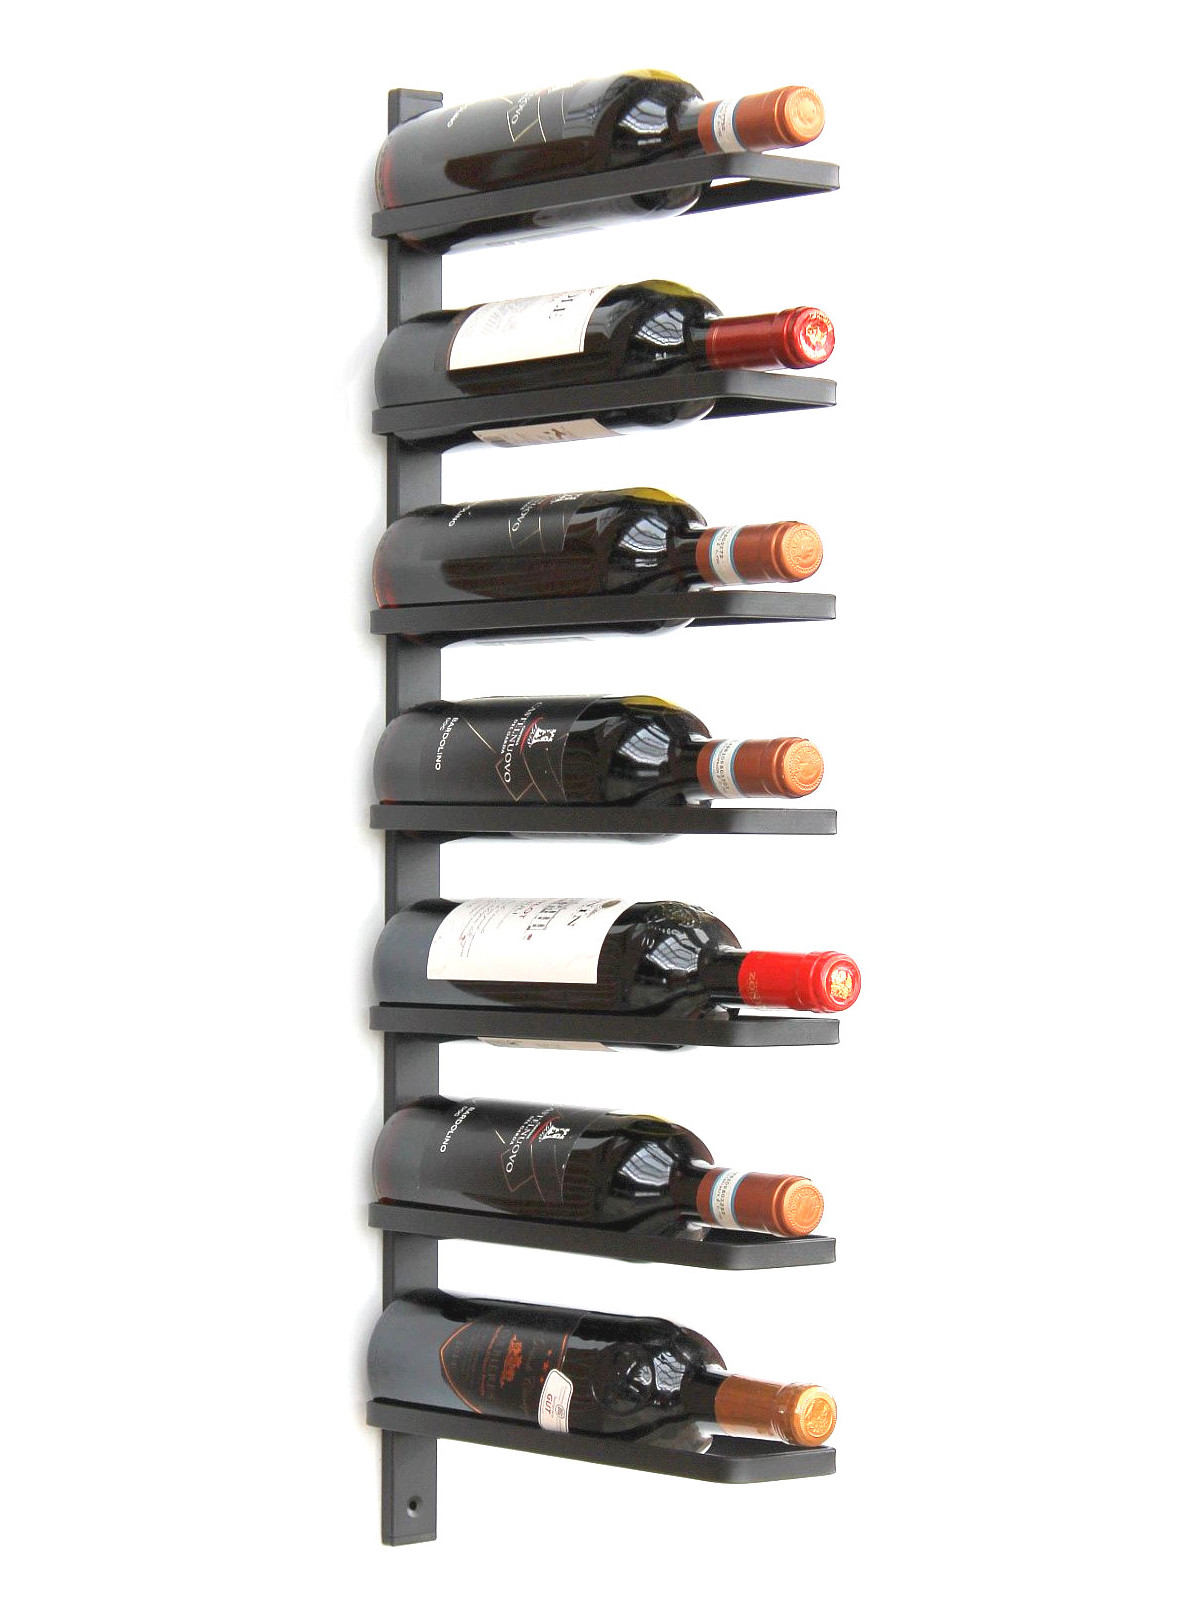 Flaschenregal in 62 x 9.5 x 99.5 cm LIFA LIVING Moderner Weinflaschenhalter für die Wand Weinhalter für 16 Flaschen Wein Schwarzes Weinregal aus Metall